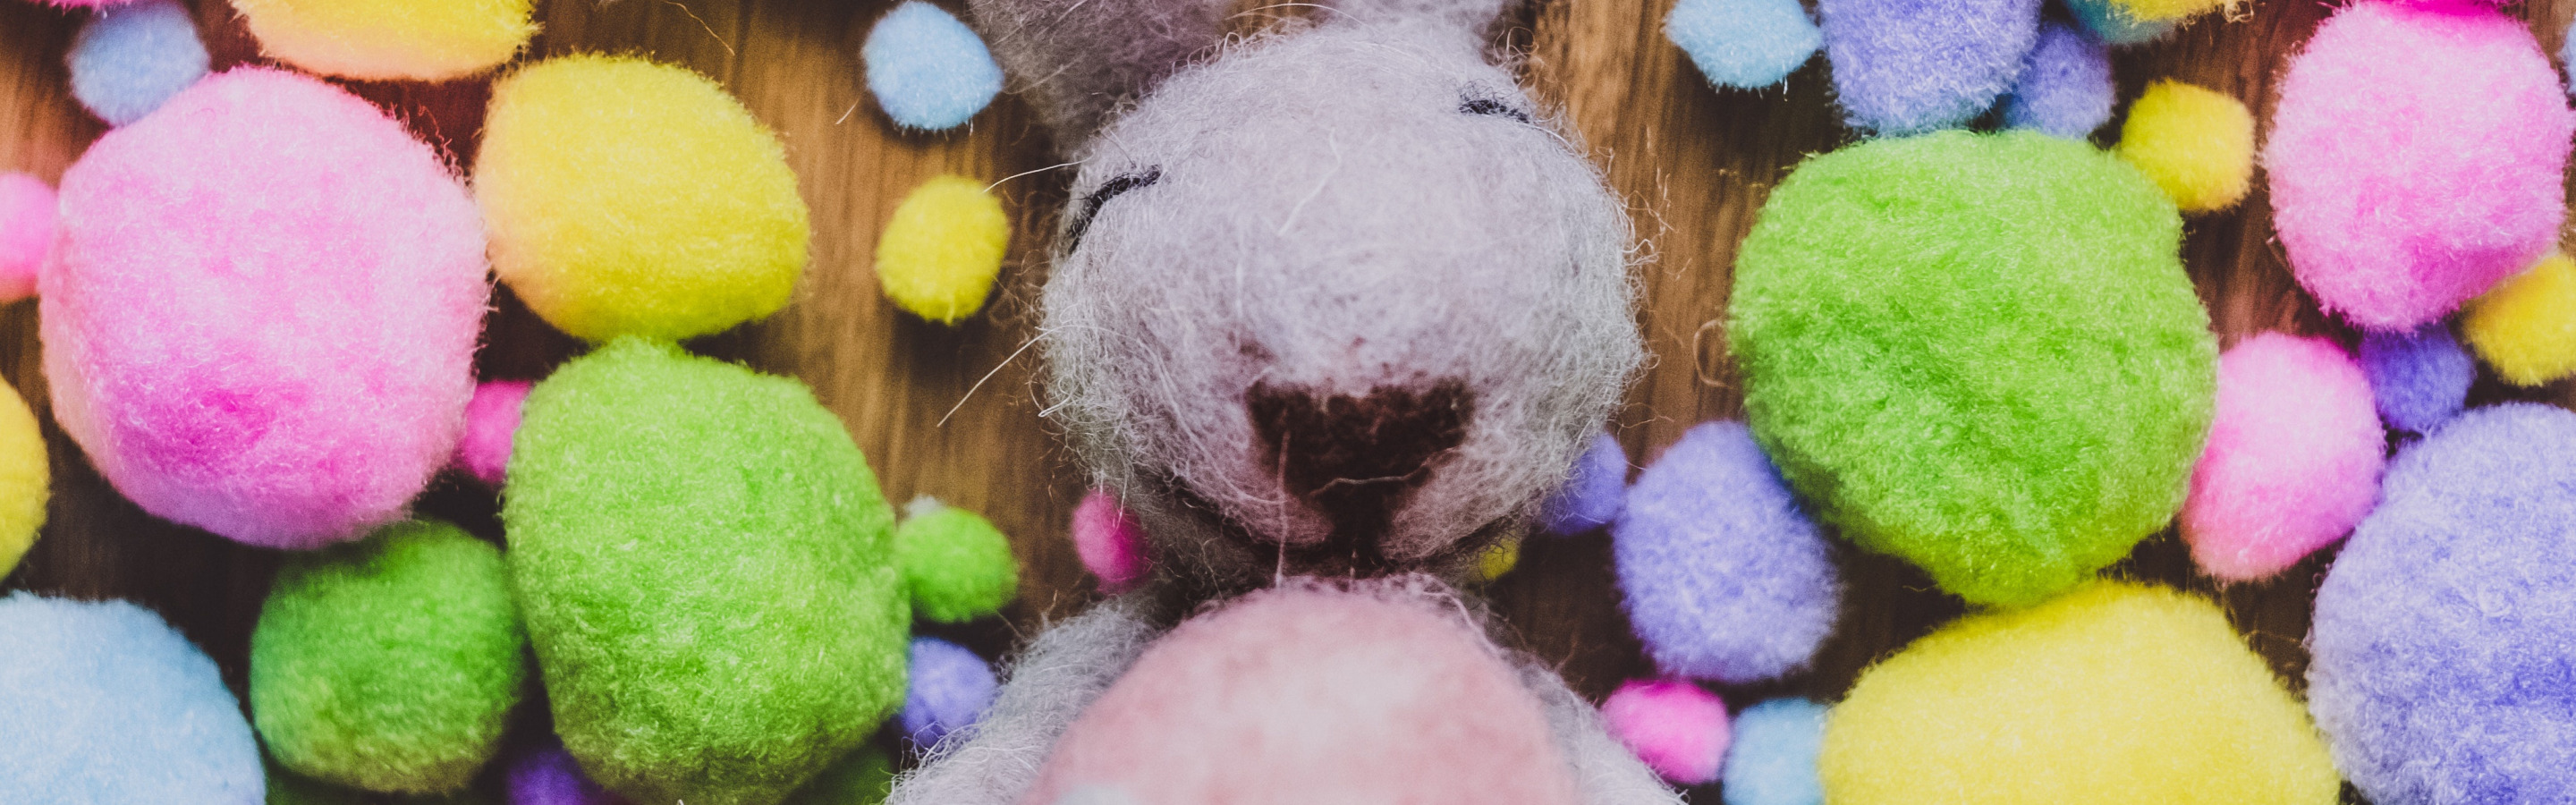 Желтые розовые зайцы игра. Мягкая игрушка зайчик разноцветный. Разноцветные зайцы игра. Зайчик розовый игрушка пушистый. Зайка и цветные шары.